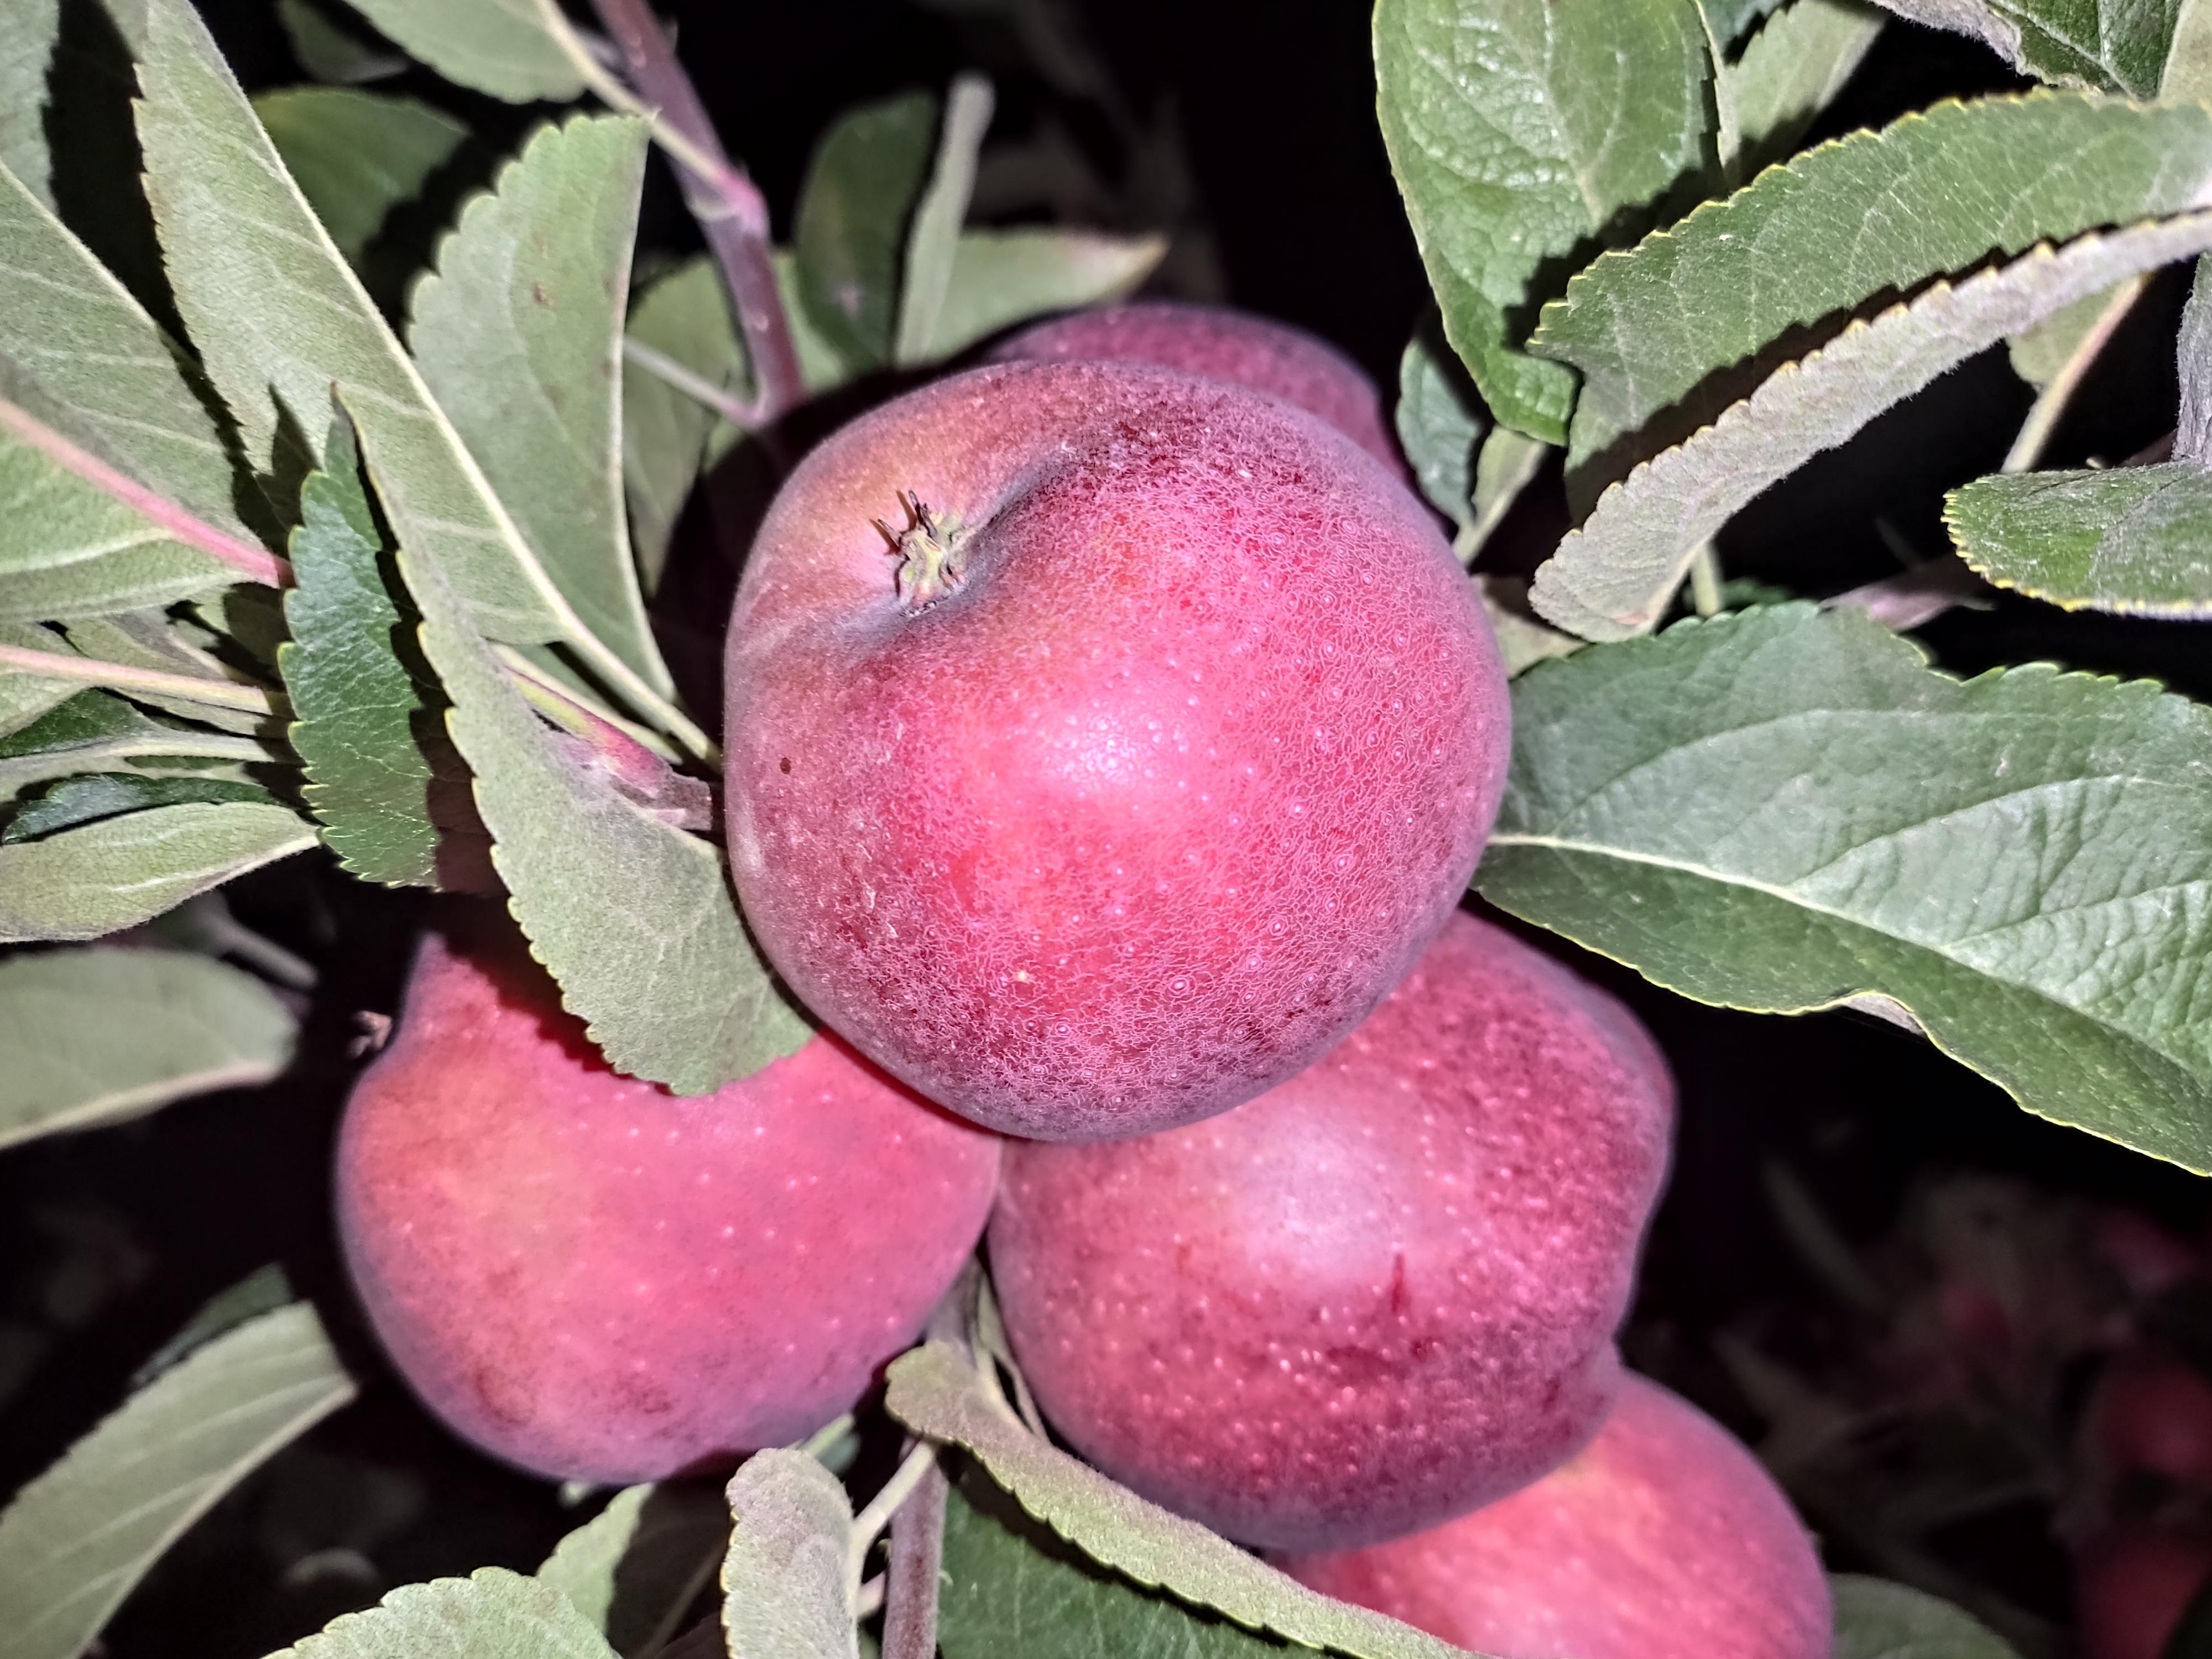 Elma - Yüksel Özalp tarafından verilen satılık starking delicious çeşidi elma  ilanını ve diğer satılık elma ilanlarını tarimziraat.com adresinde bulabilirsiniz